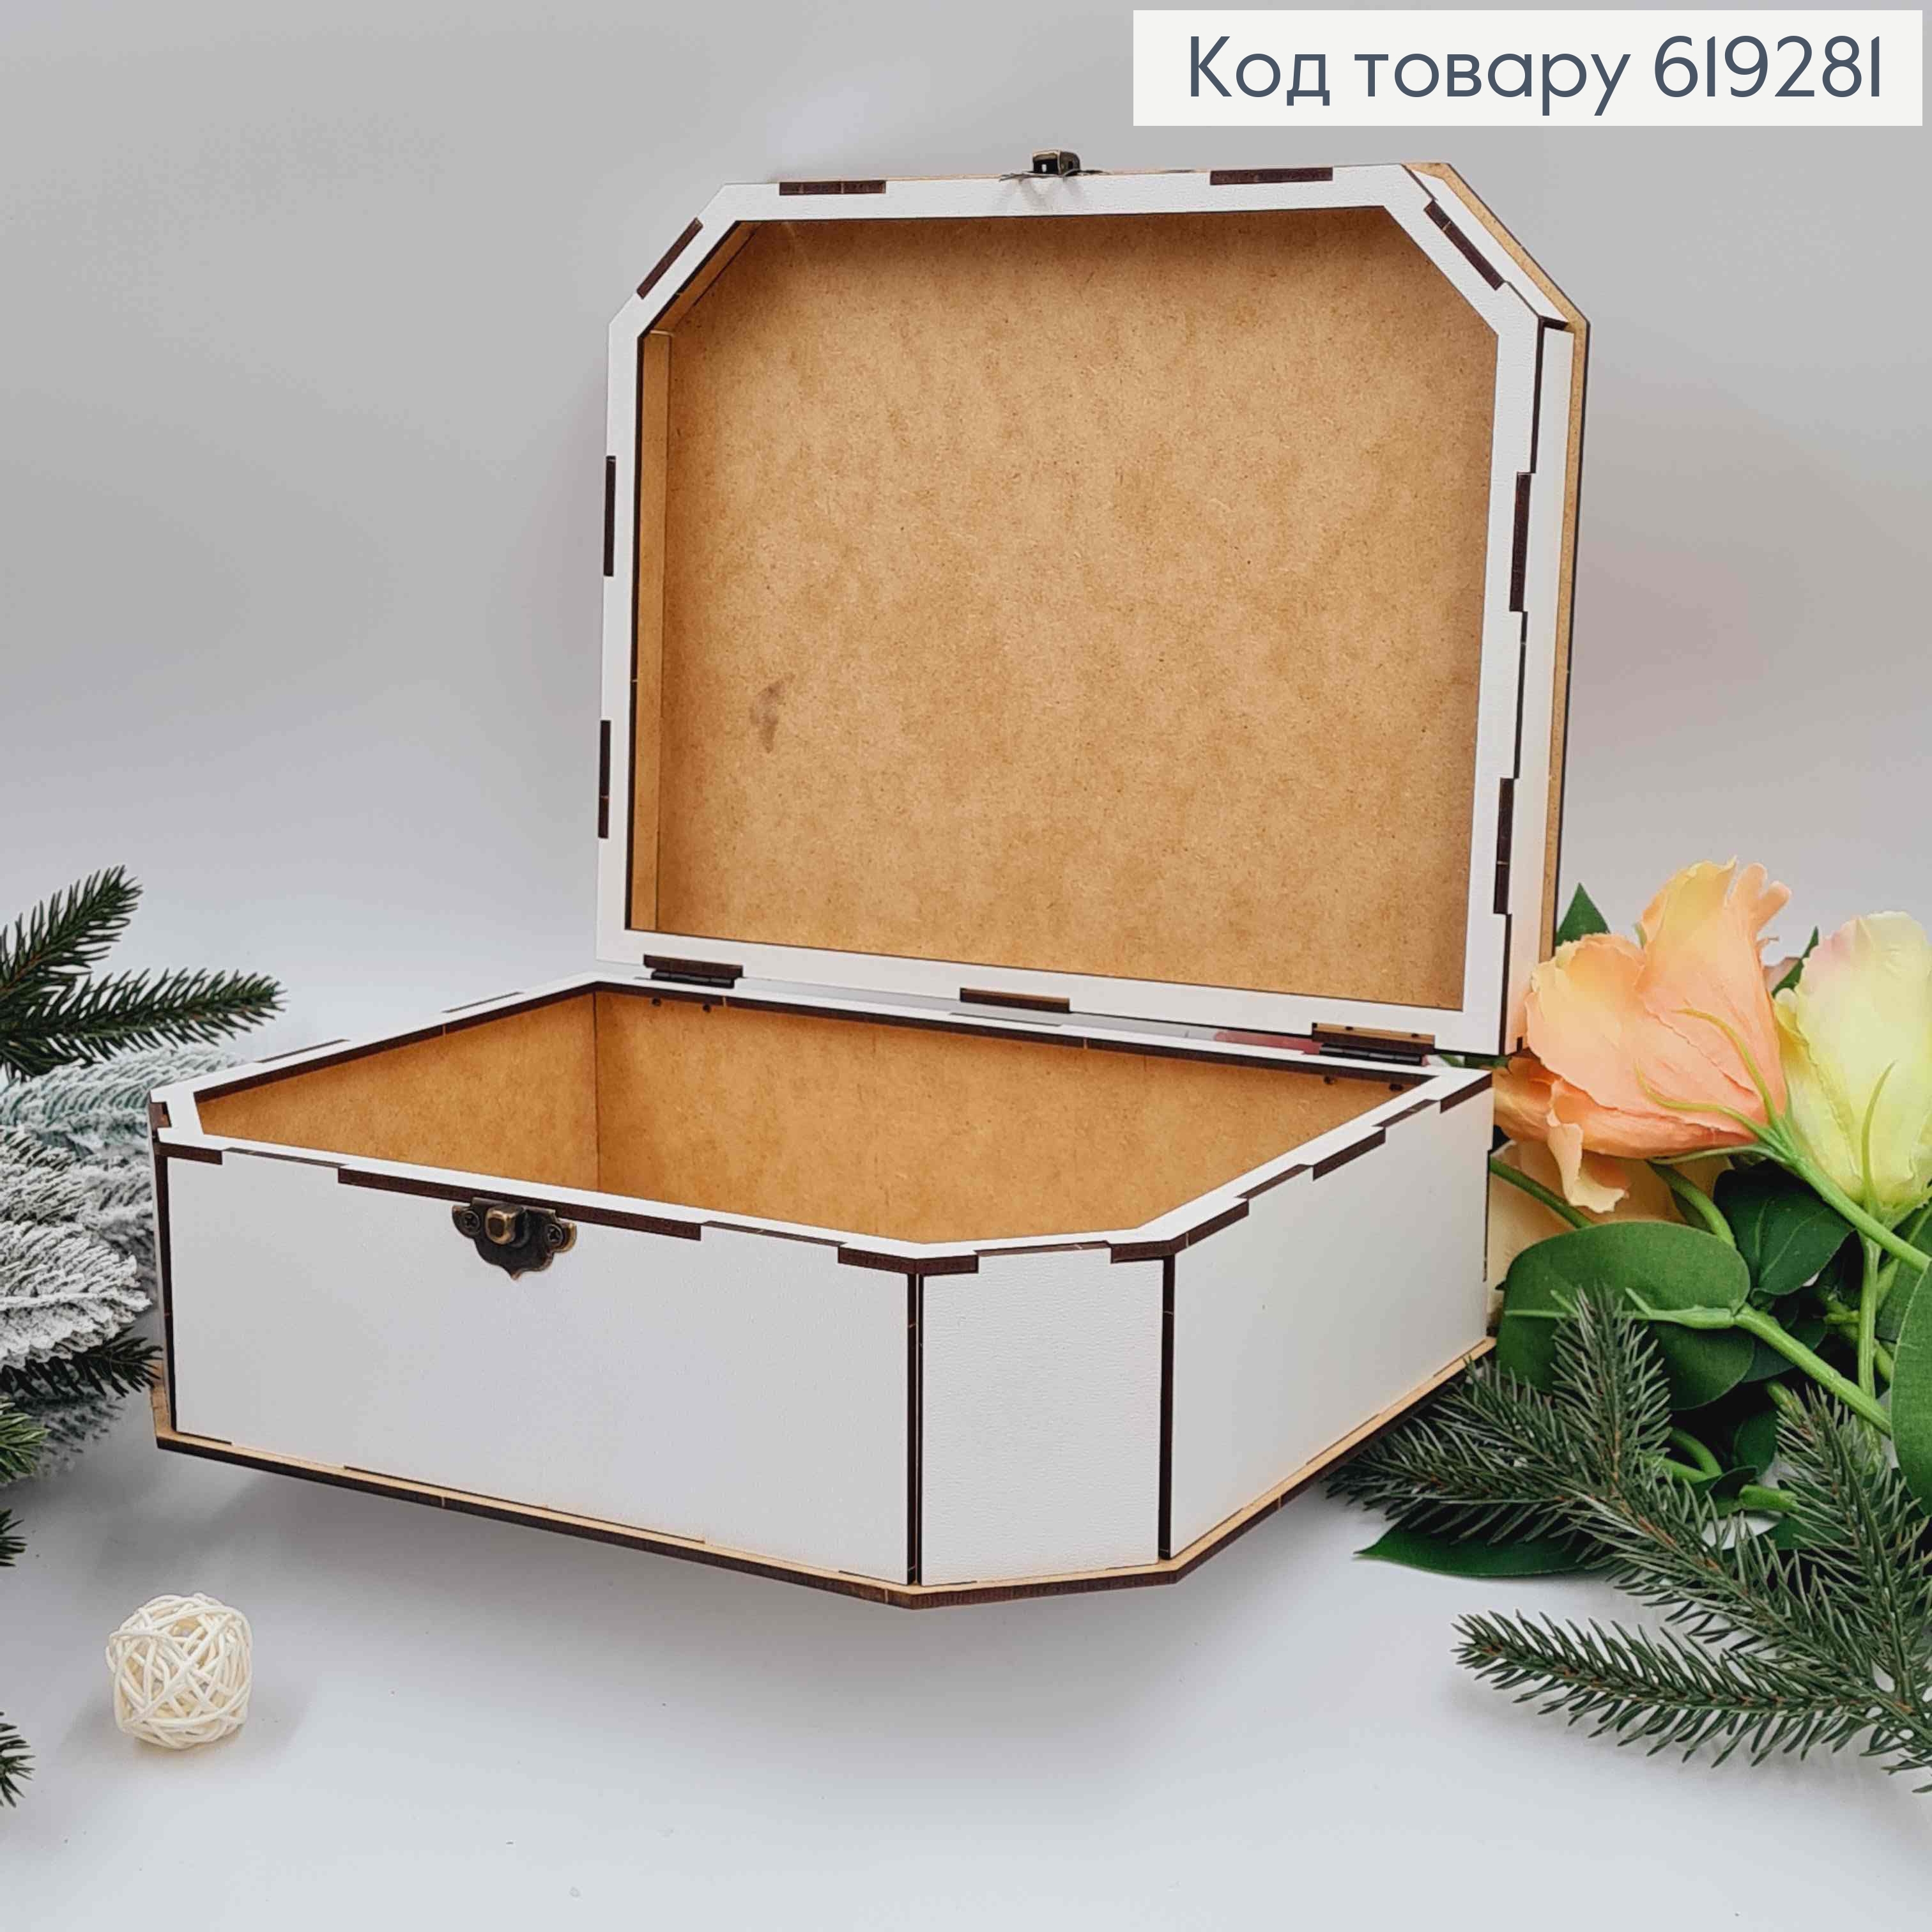 Дерев'яна подарункова коробка, Біла, 24*19*6см, на застібці. Україна 619281 фото 2